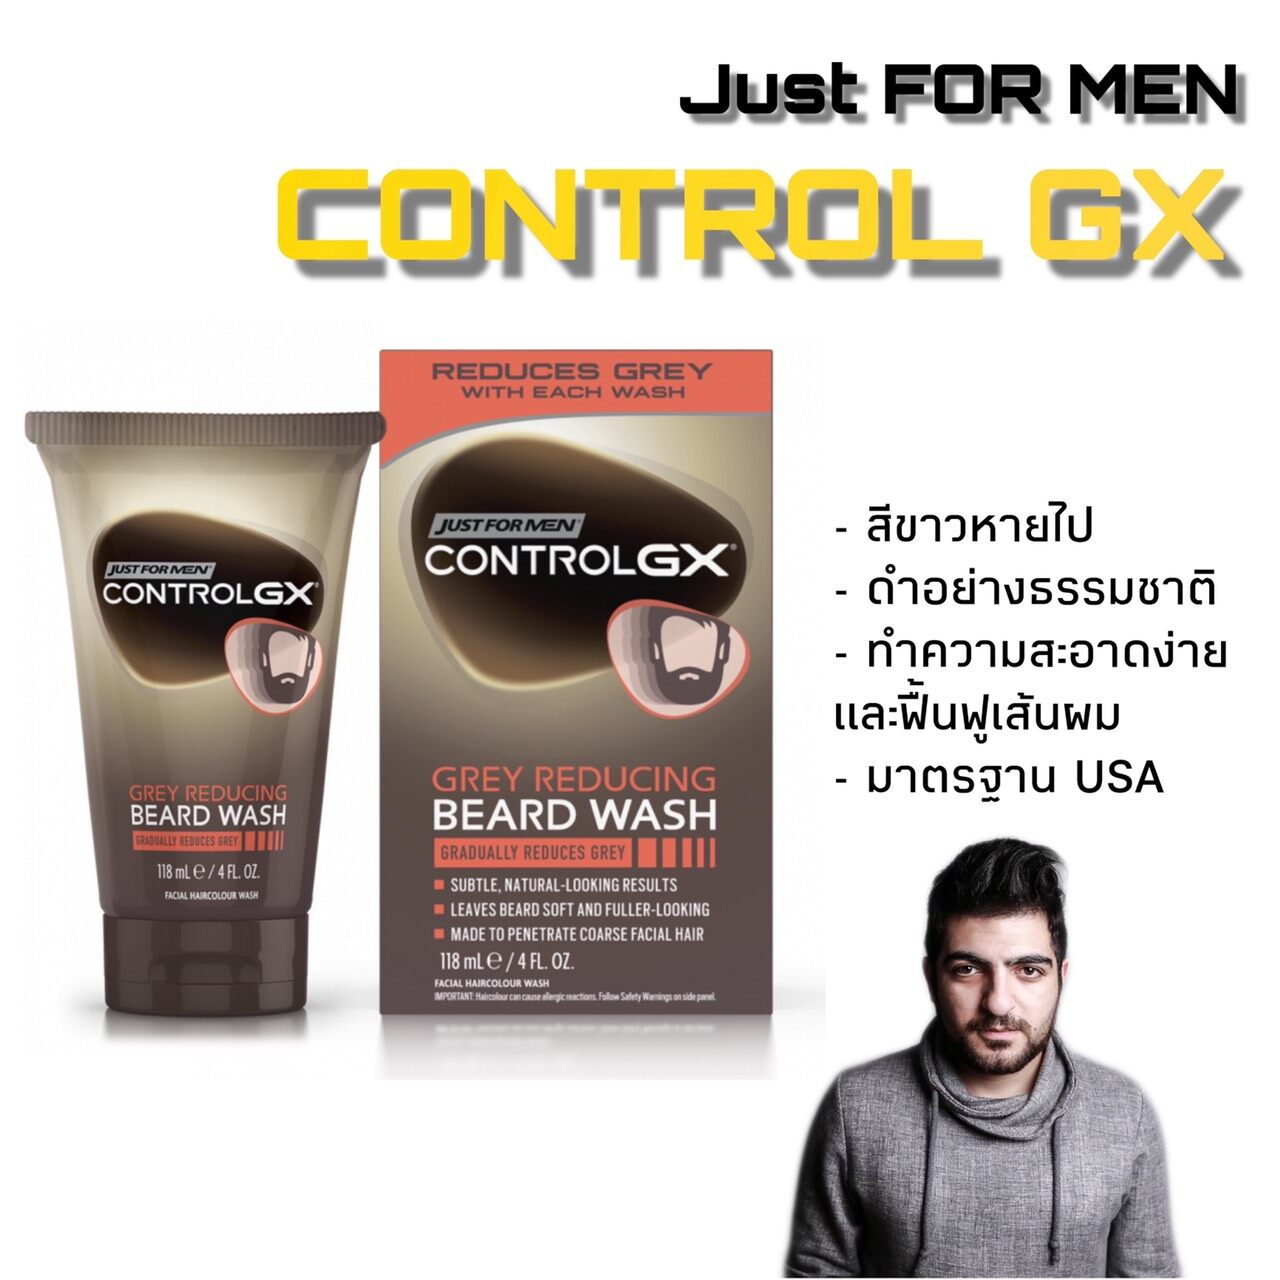 แชมพูย้อมเคราดำ แชมพูย้อมหนวดดำ Just For Men Control GX Gray Reduicing Beard Shampoo For Mustache & Beard Wash 118ml หนวดดำ เคราดำ เคราหงอก หนวดขาว